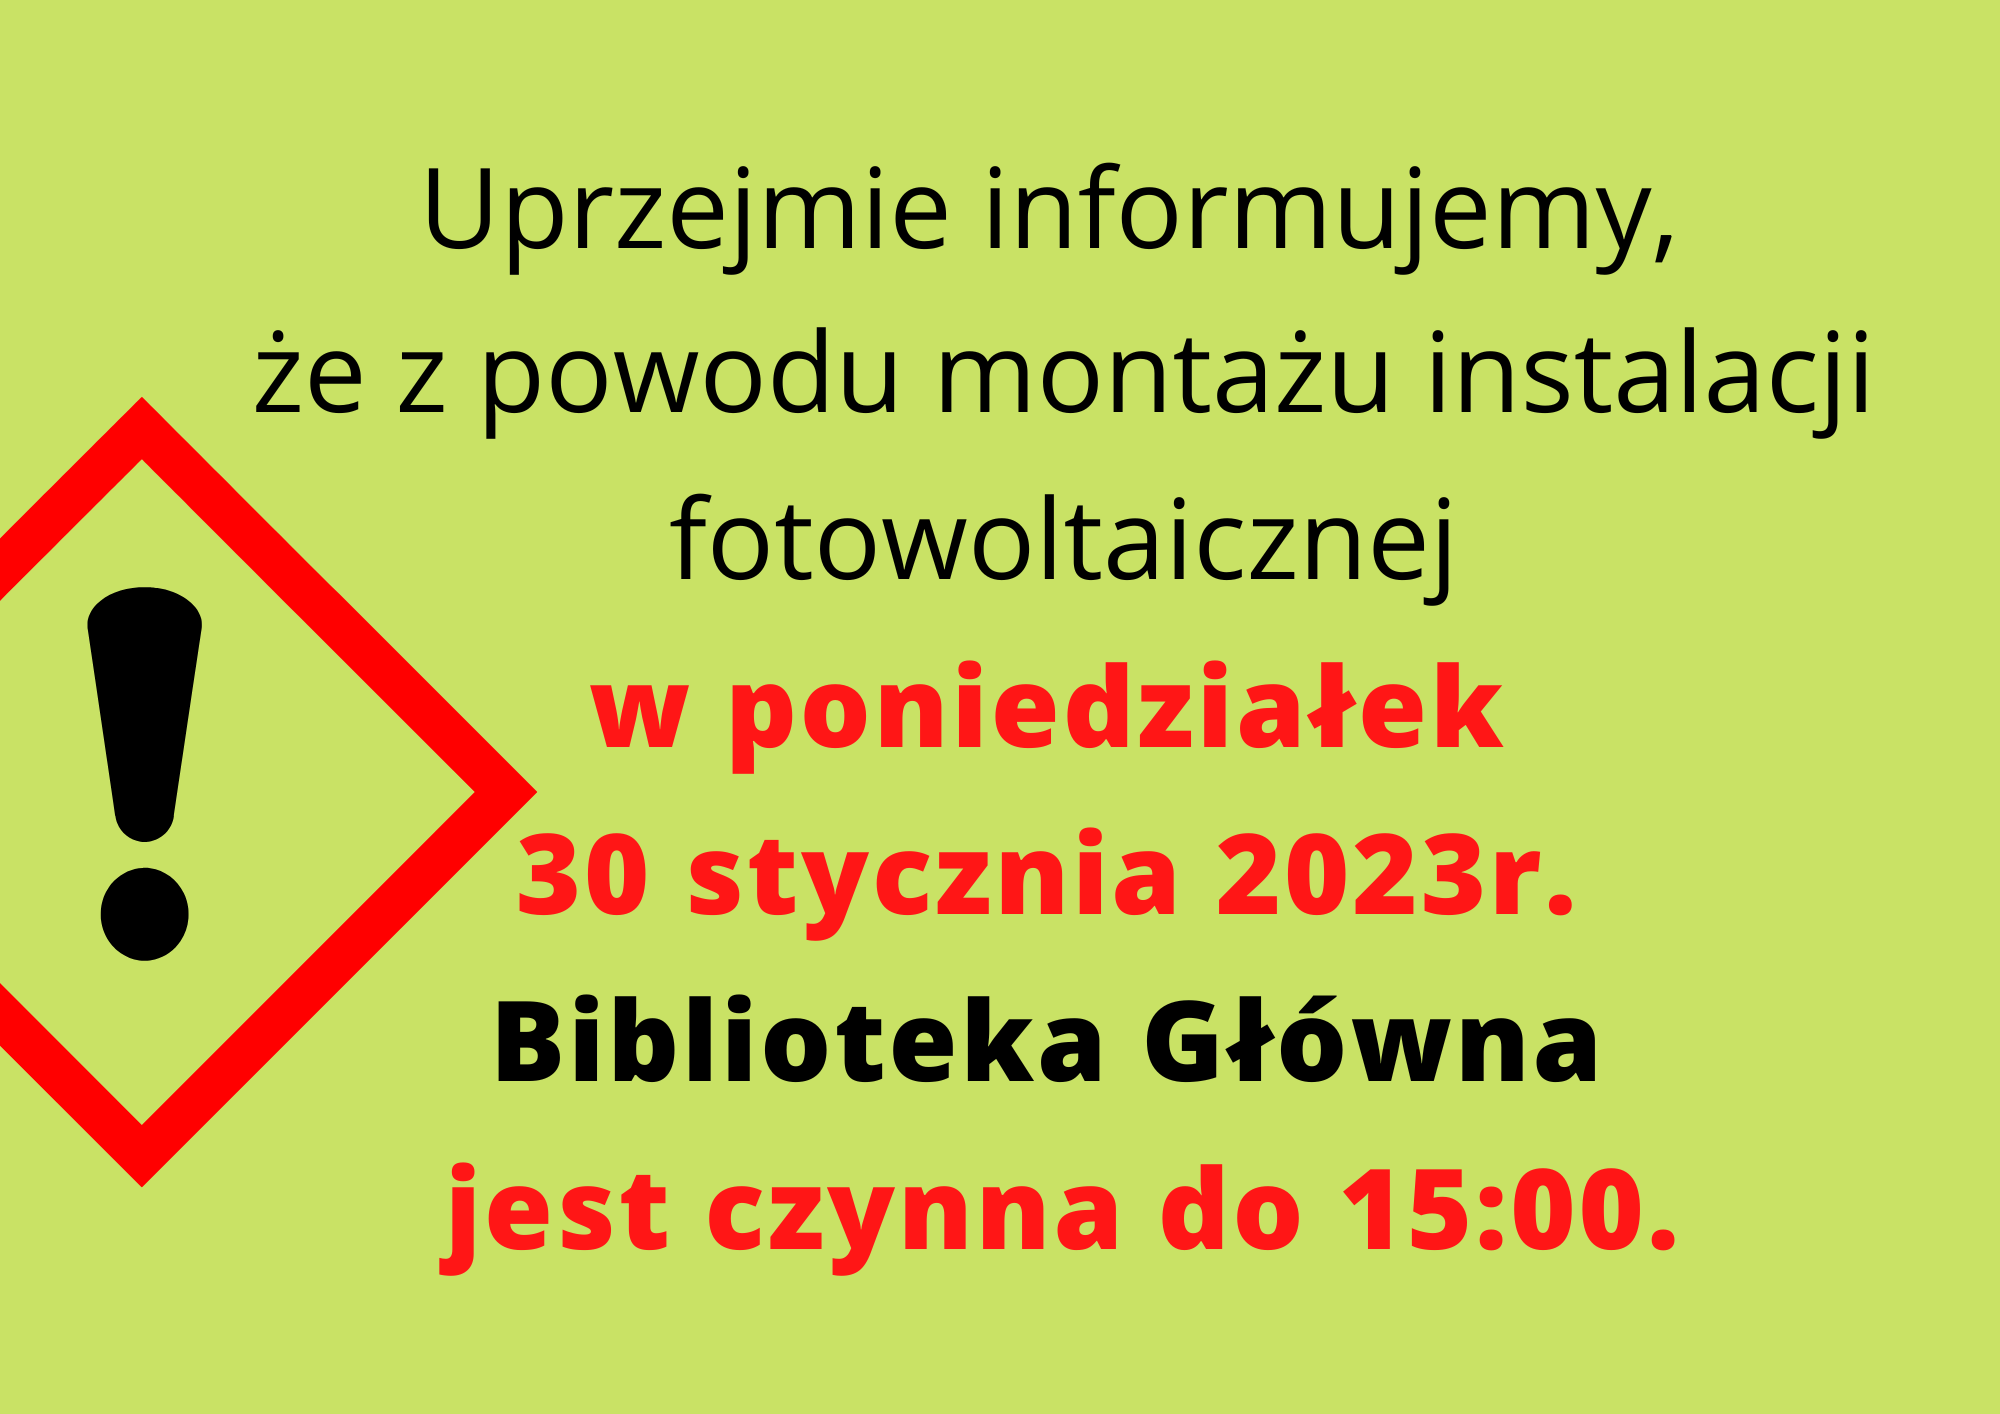 Uwaga‼ W poniedziałek 30 stycznia 2023 r. z powodu montażu instalacji fotowoltaicznej Biblioteka Główna (ul. Płocka 30) jest czynna do godziny 15:00.